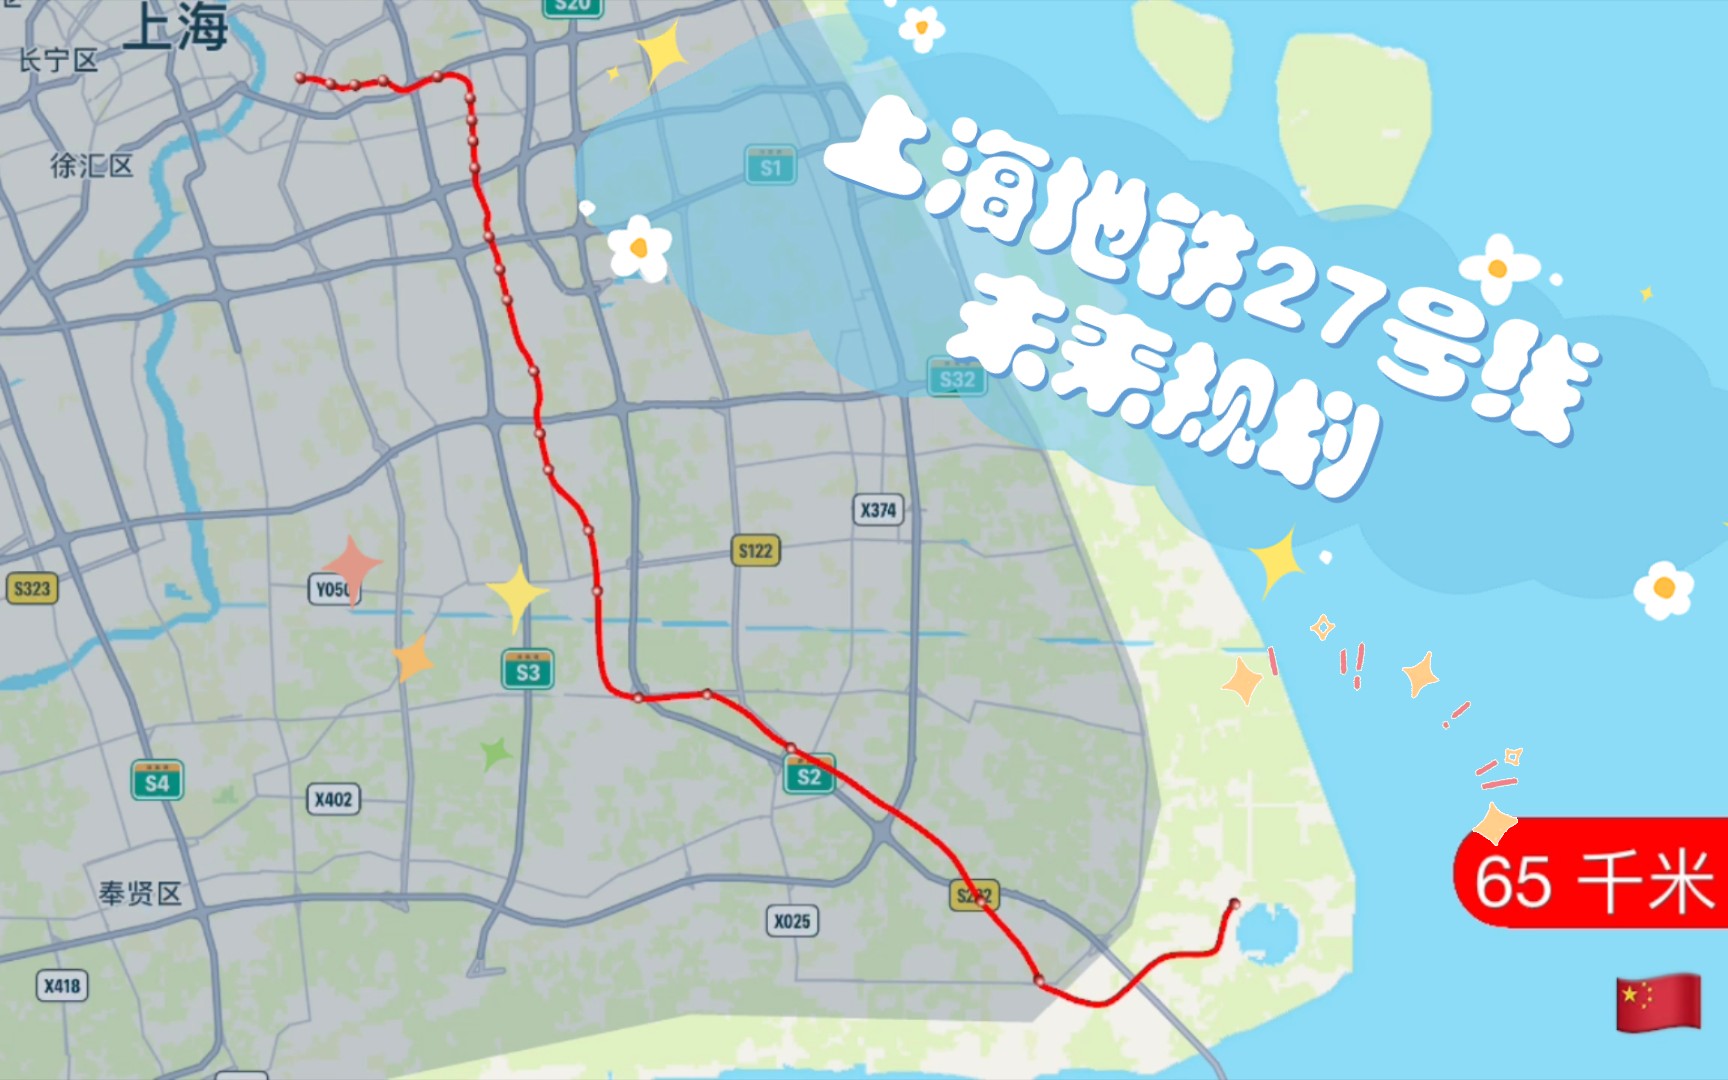 上海 27号线图片